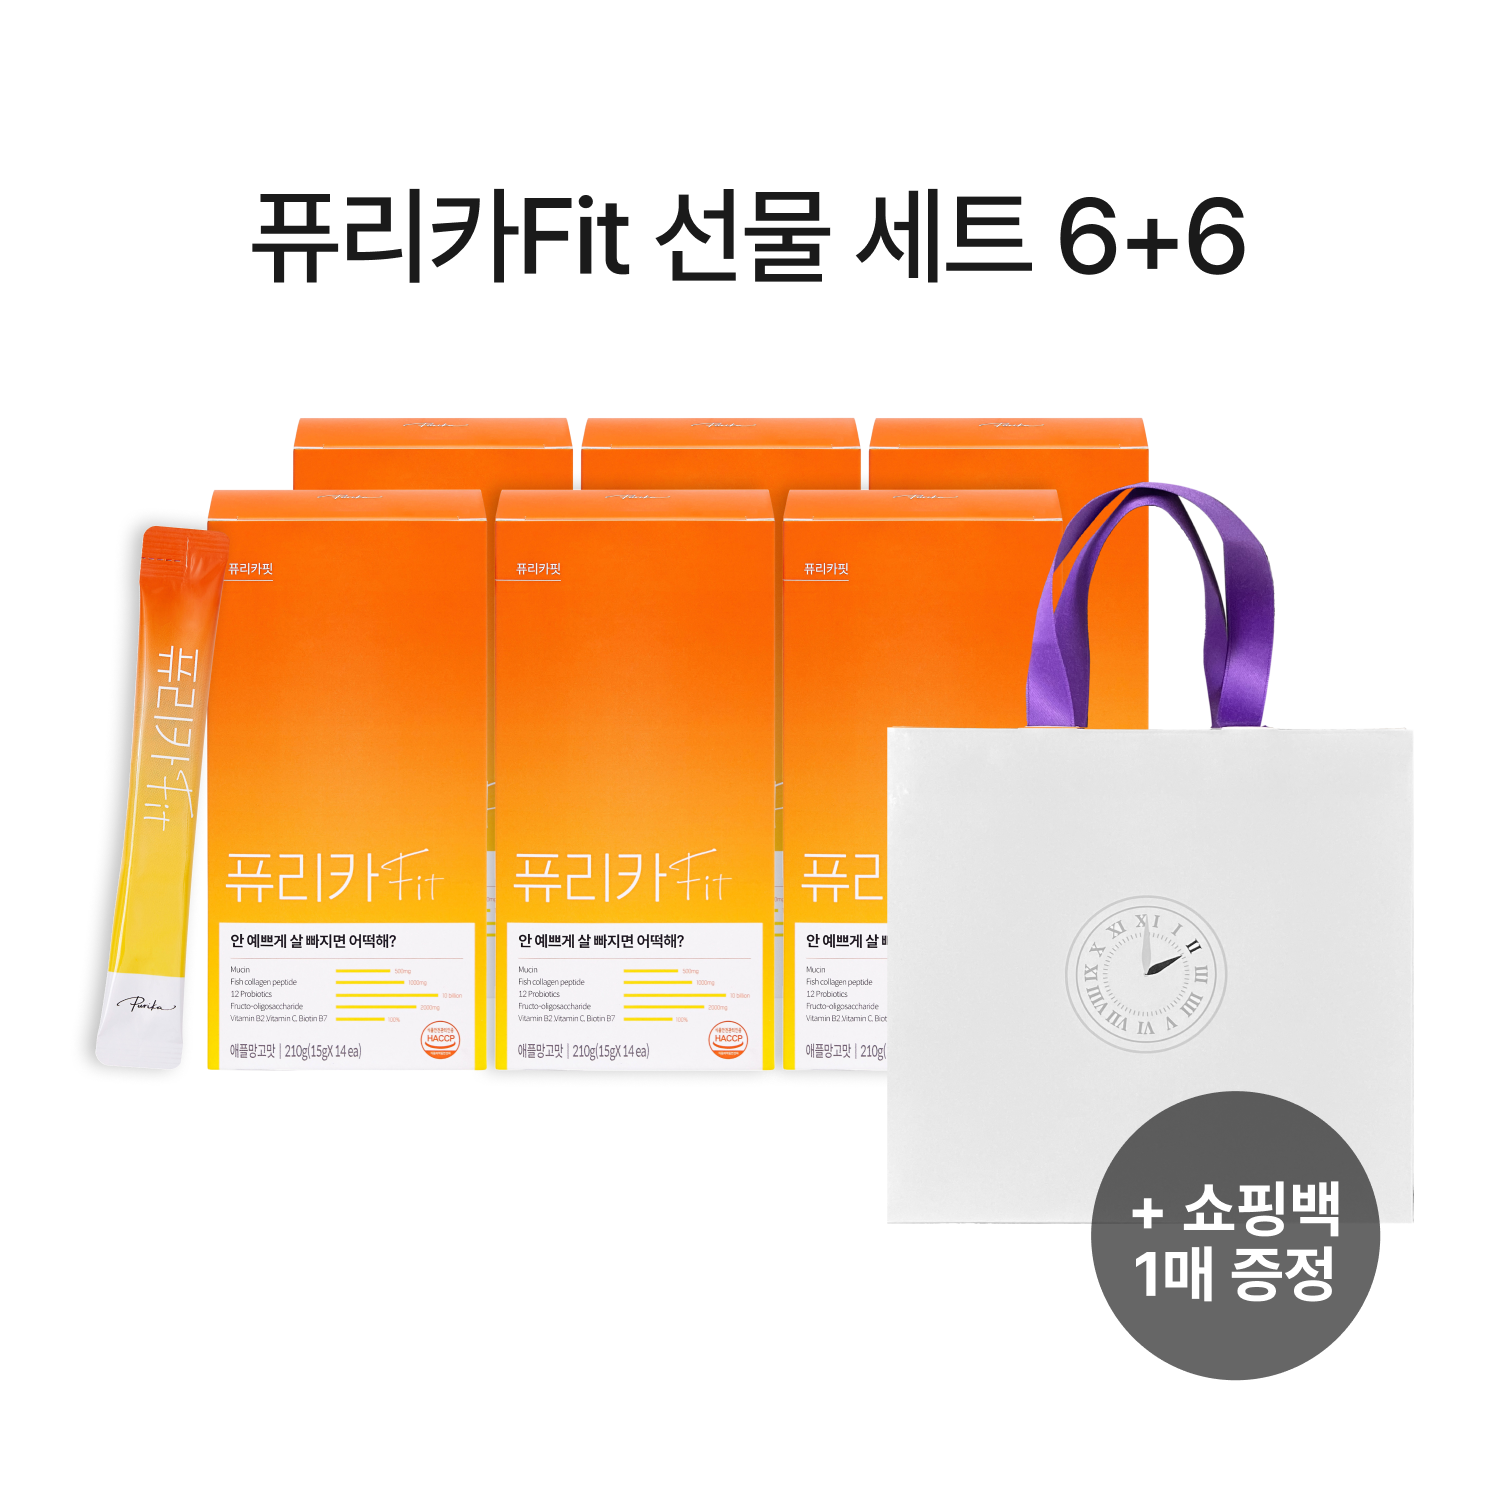 [기간한정] 퓨리카Fit 6+6 선물세트 (12box,6개월)